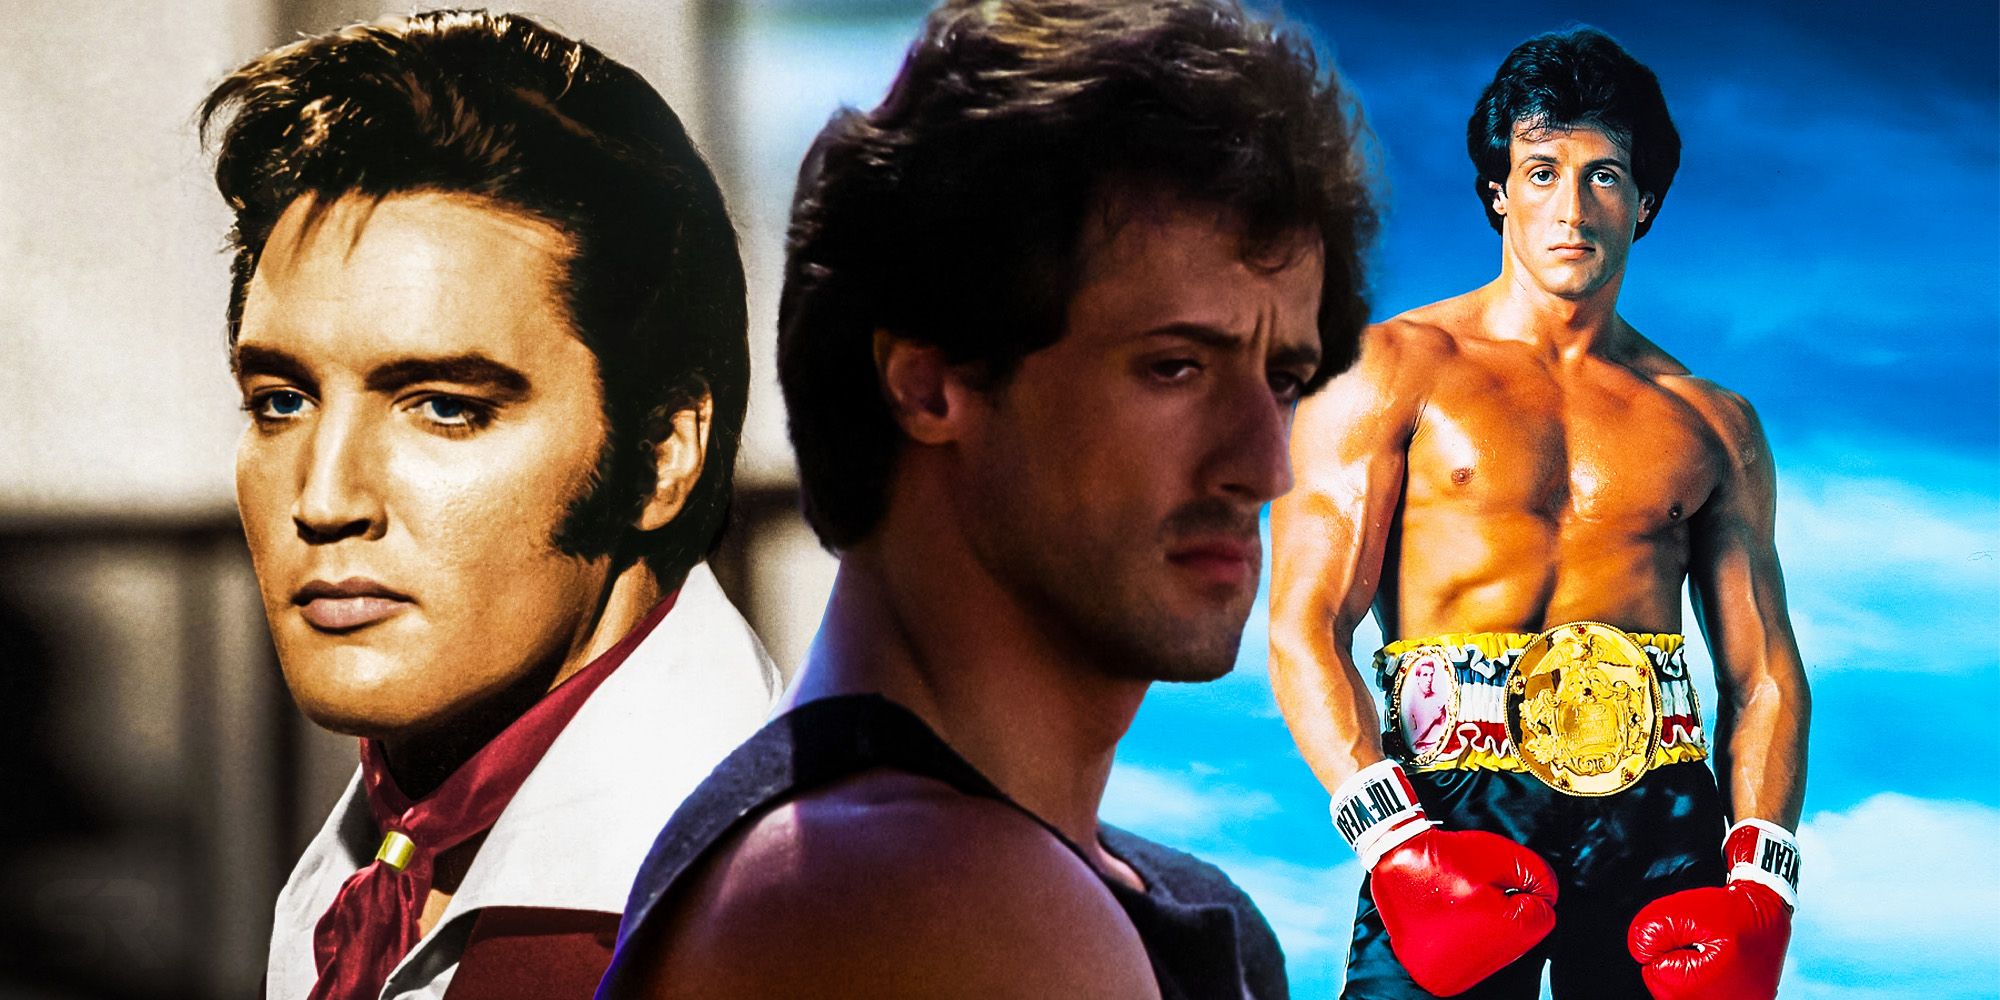 Rocky no le tenía miedo a nadie, pero Sly Stallone sí le tenía miedo a… ¿Elvis?